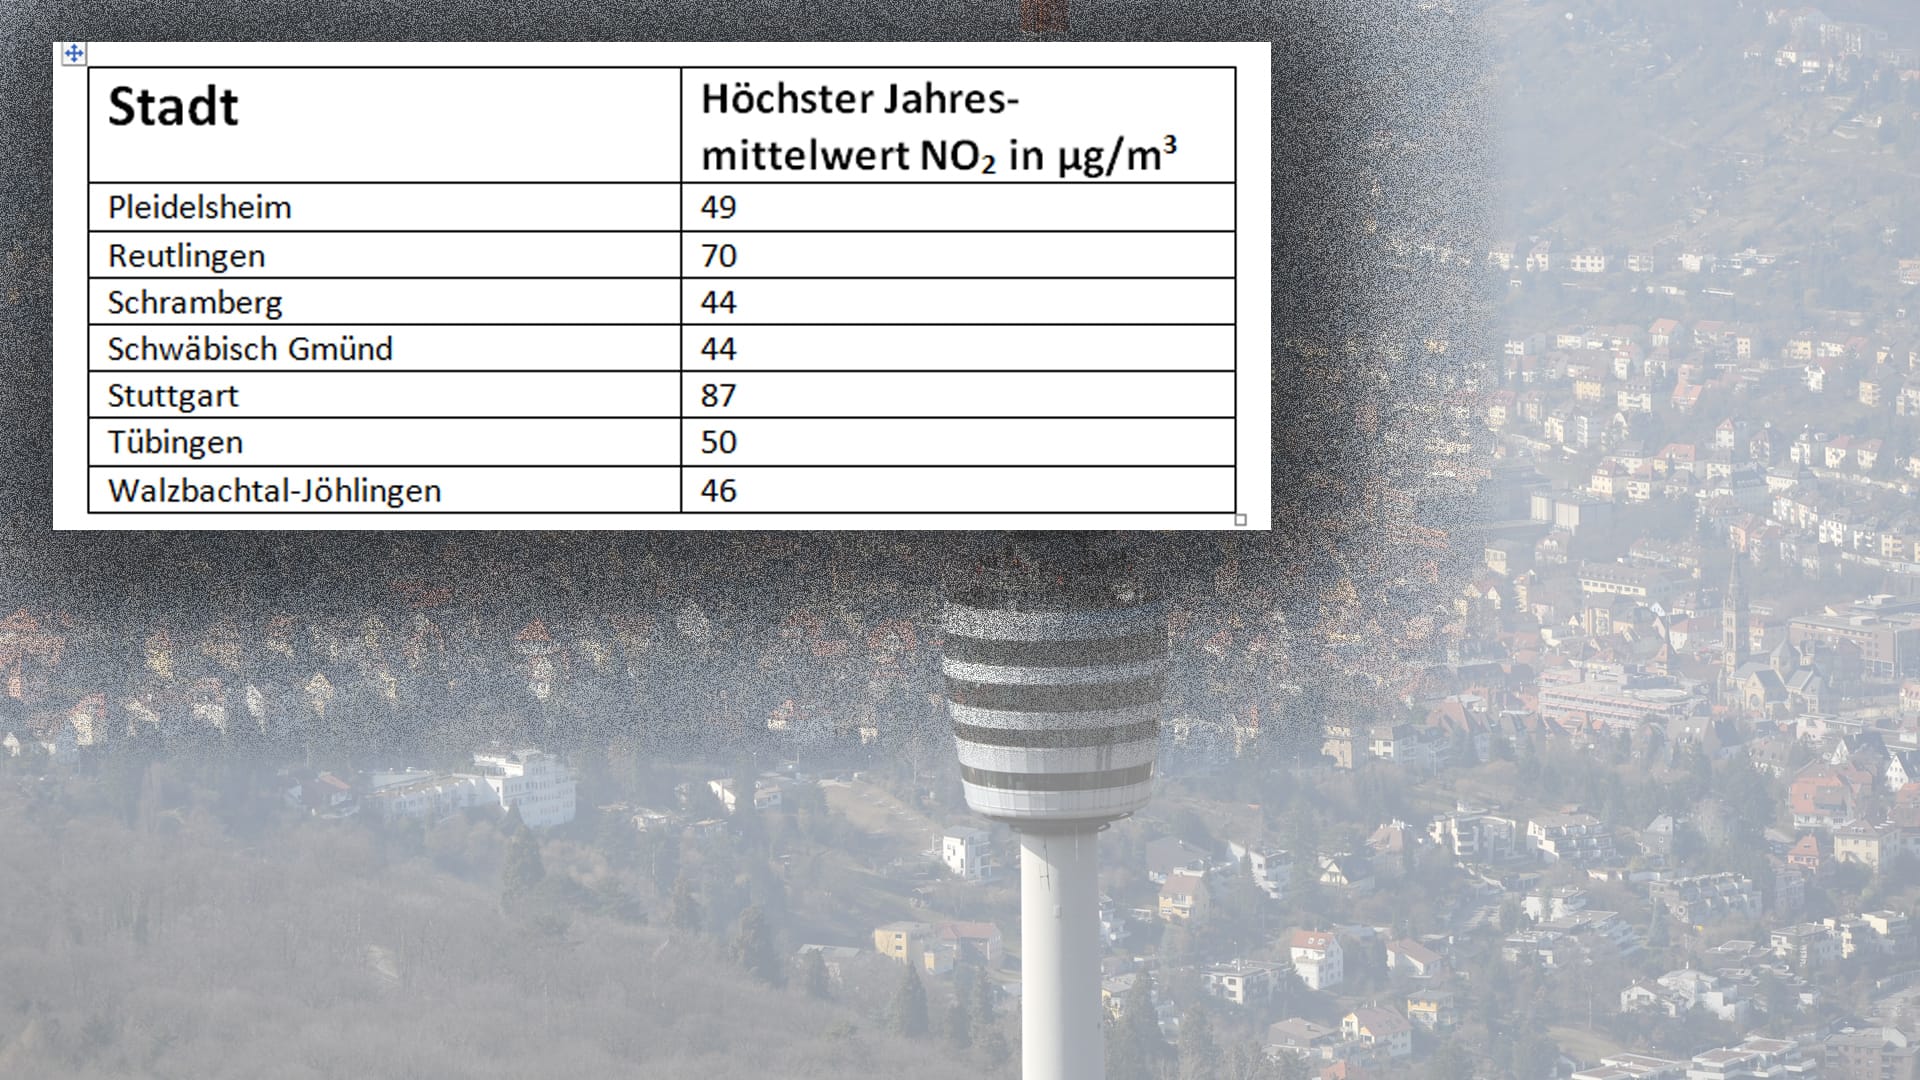 Die bundesweit höchsten Stickoxid-Werte wurden in Stuttgart gemessen.